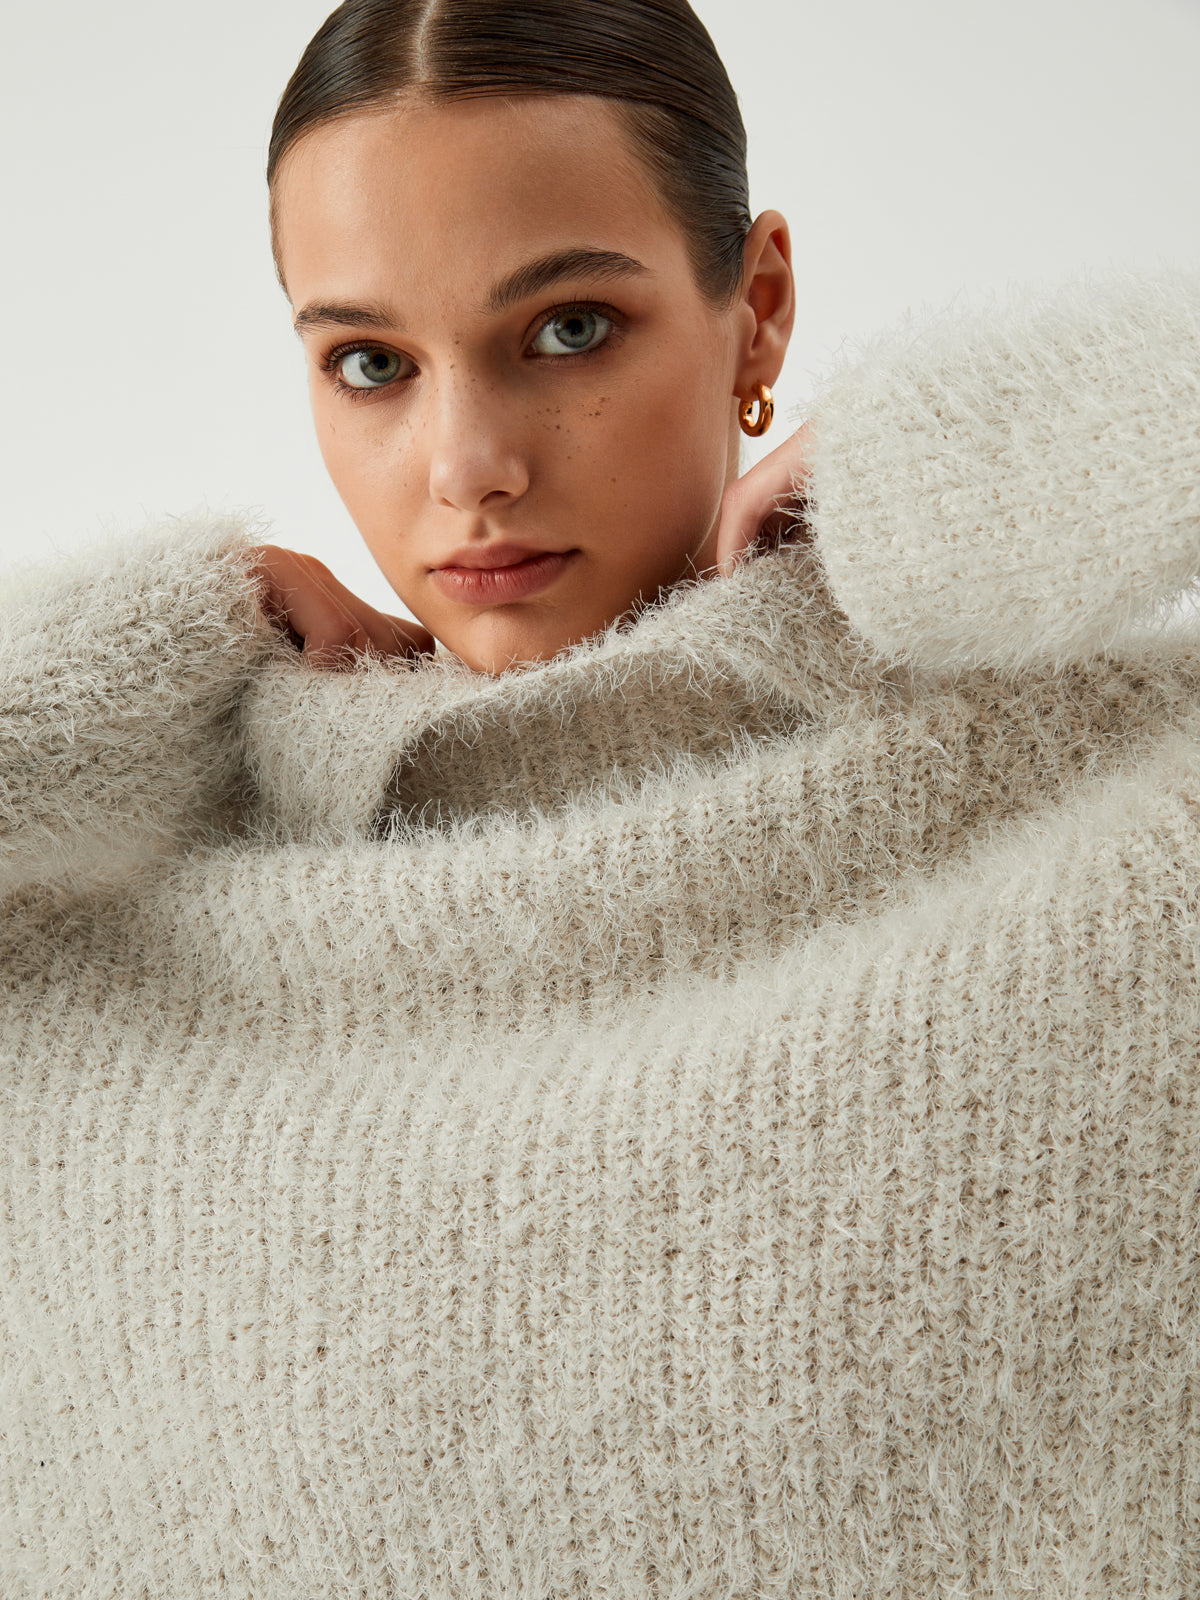 Turtleneck Fuzzy Sweater